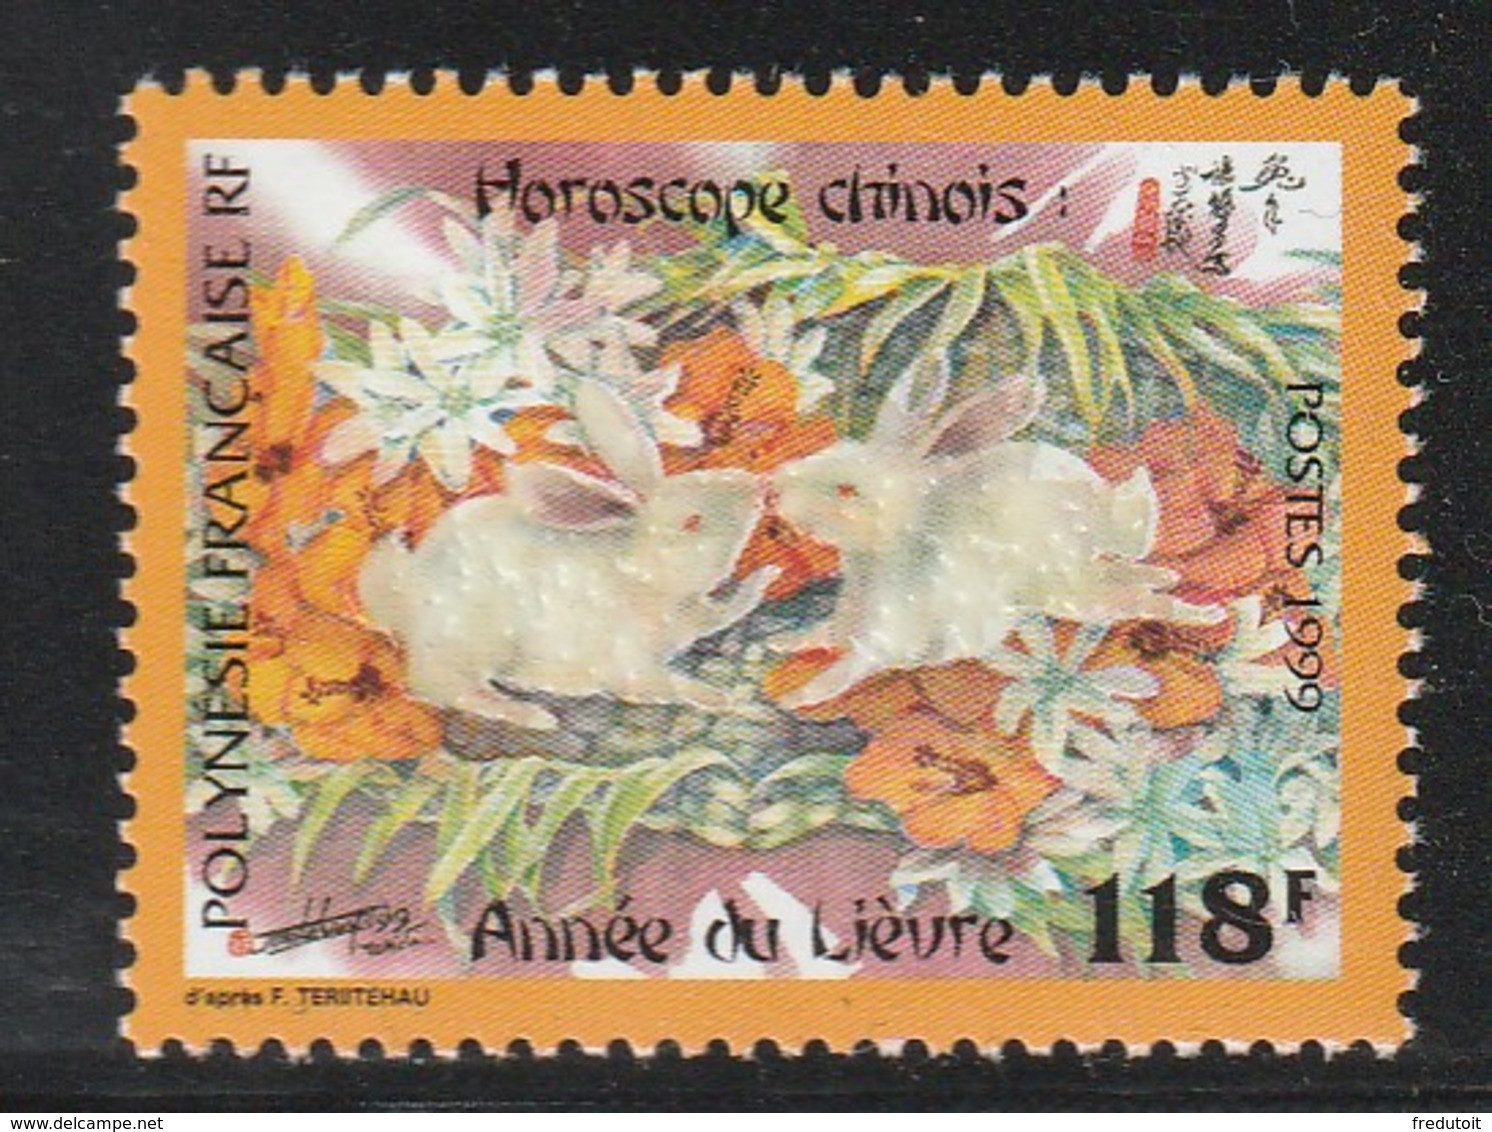 POLYNESIE - N°579 ** (1999) Année Du Lièvre - Neufs